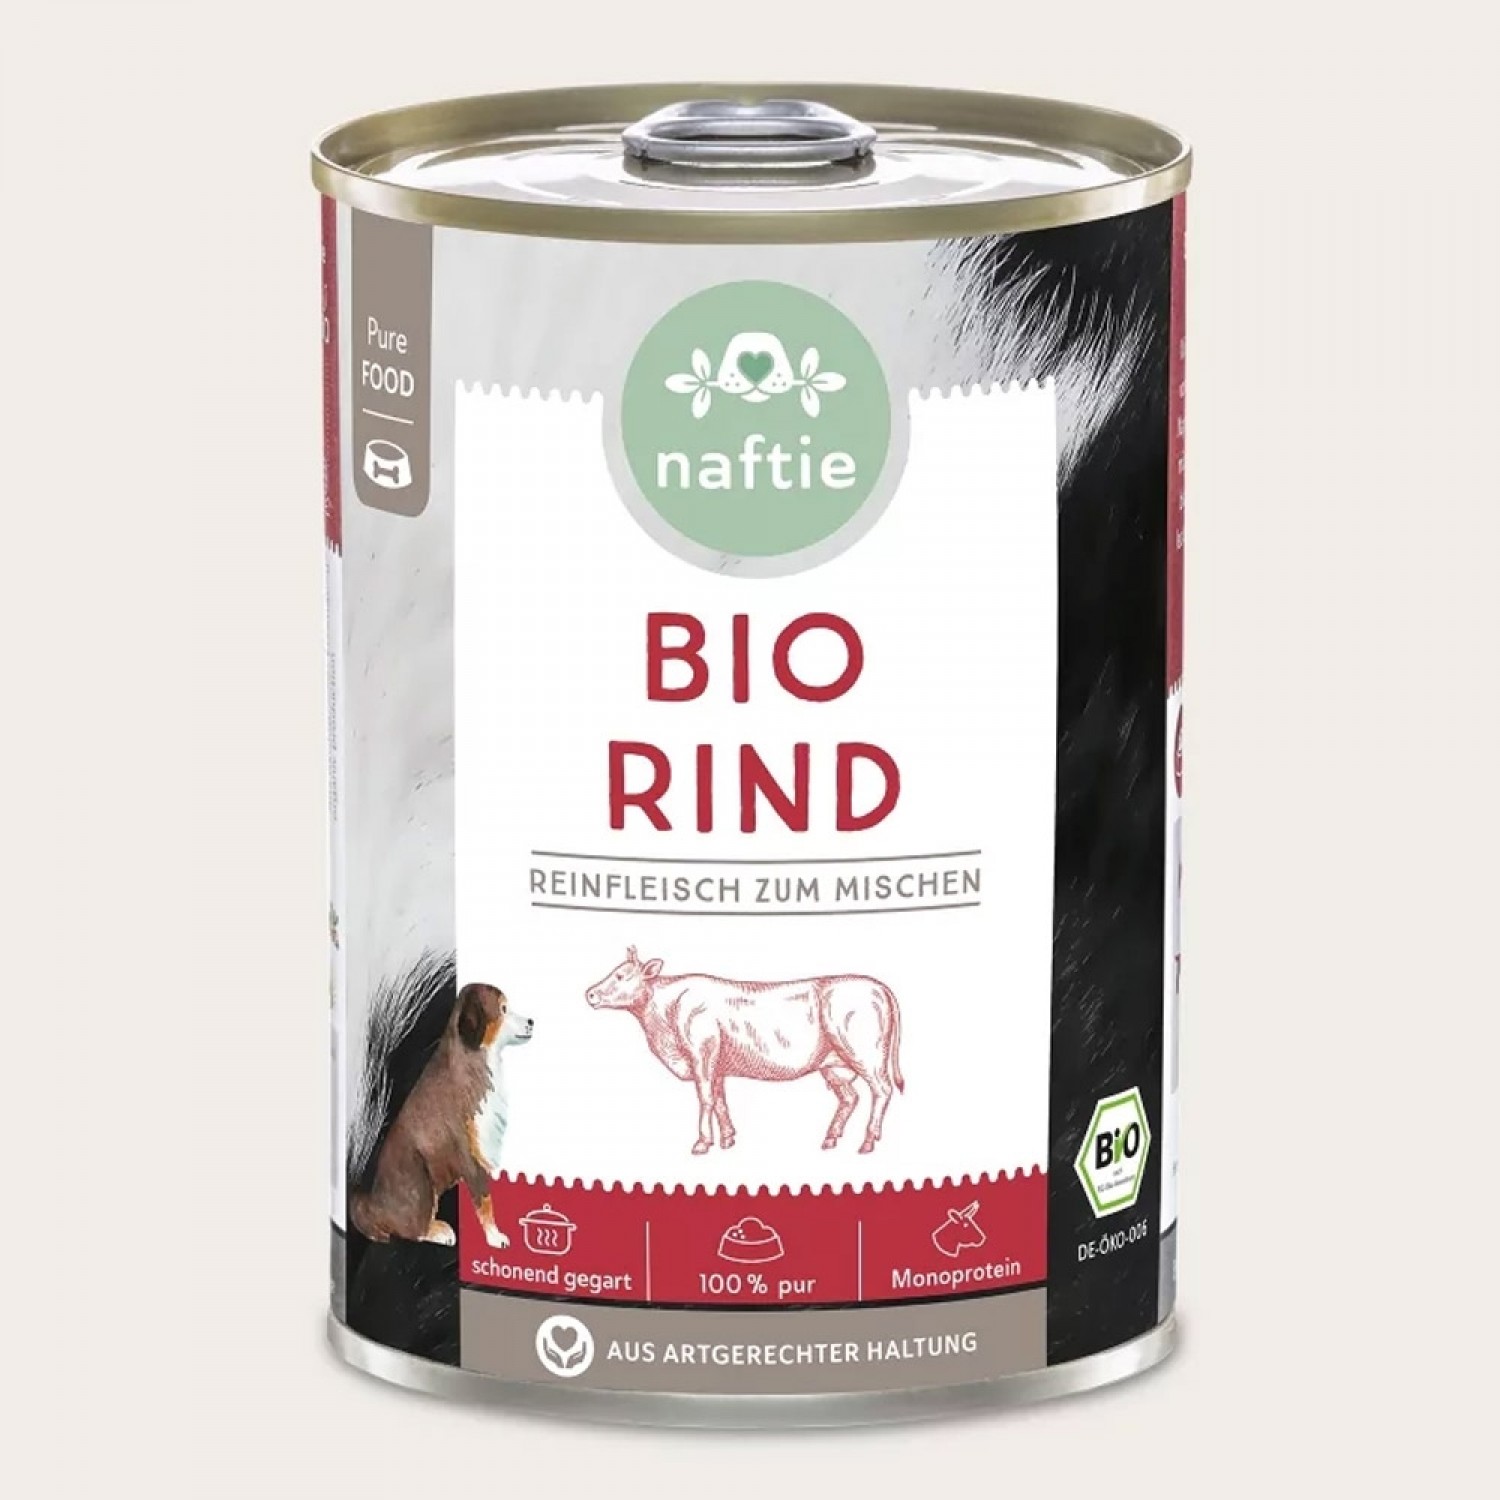 100% BIO-RIND Barf Nassfutter für Hunde » naftie